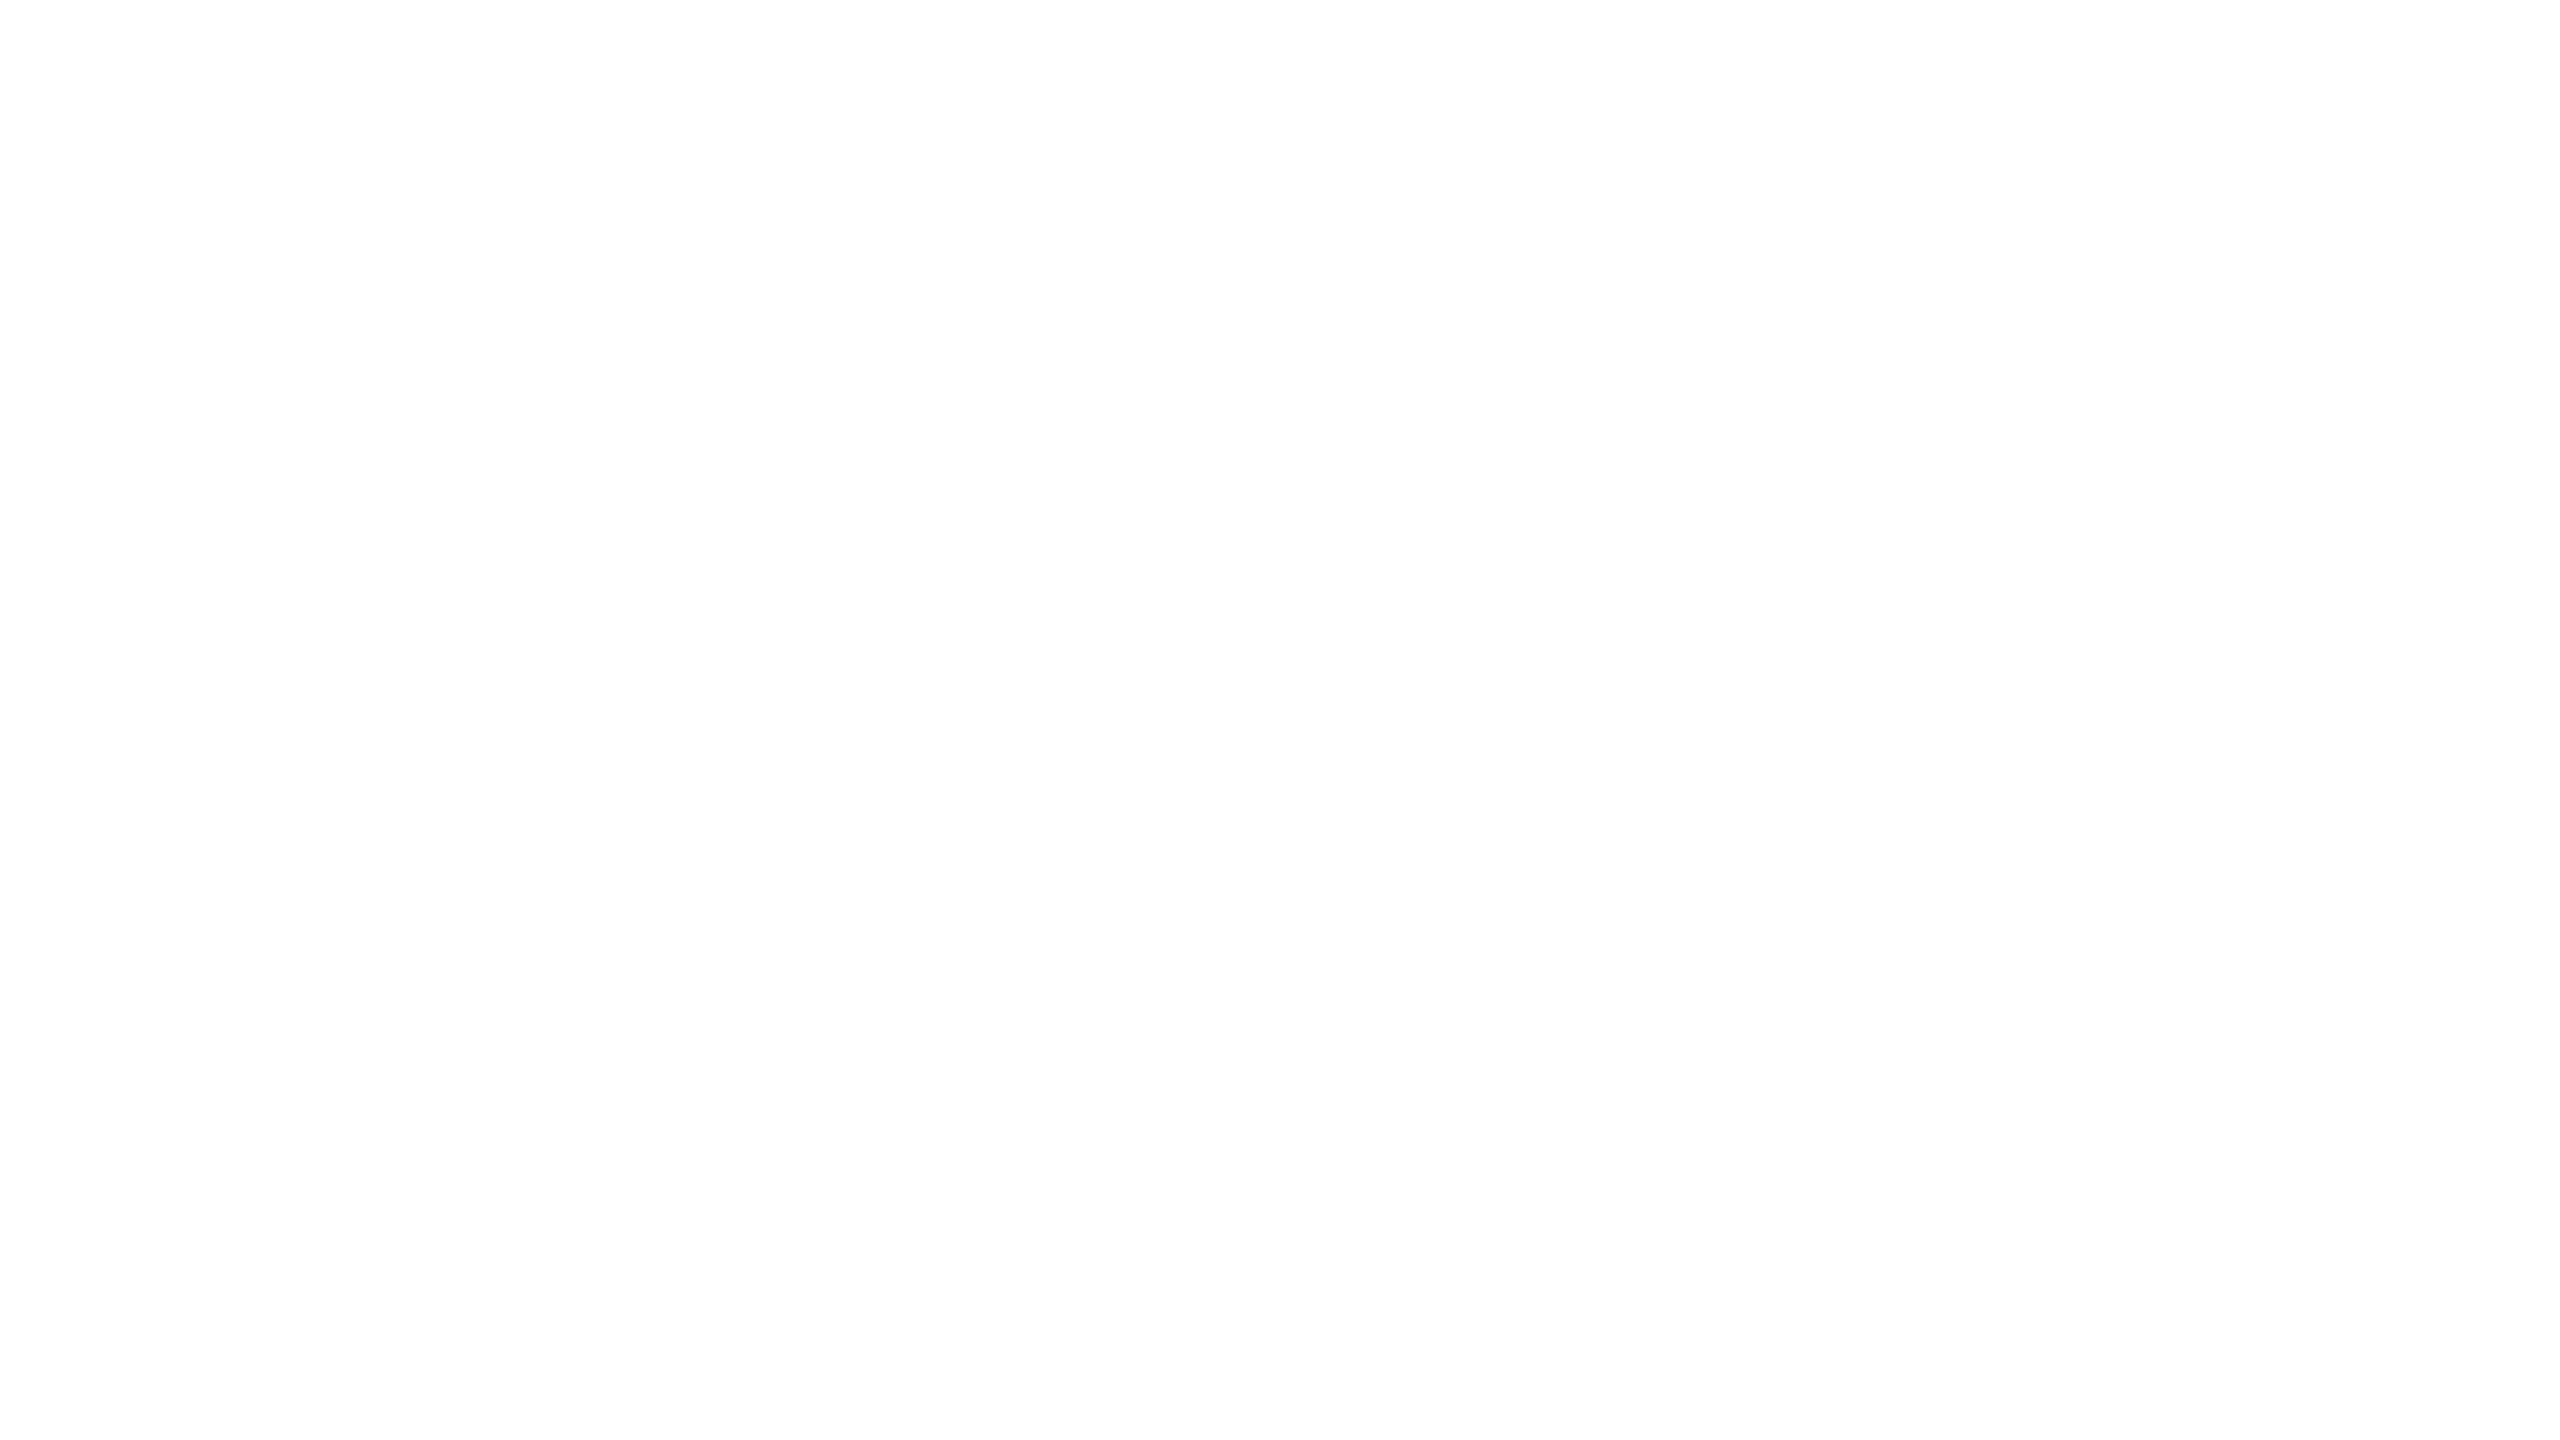 bein sport logo white